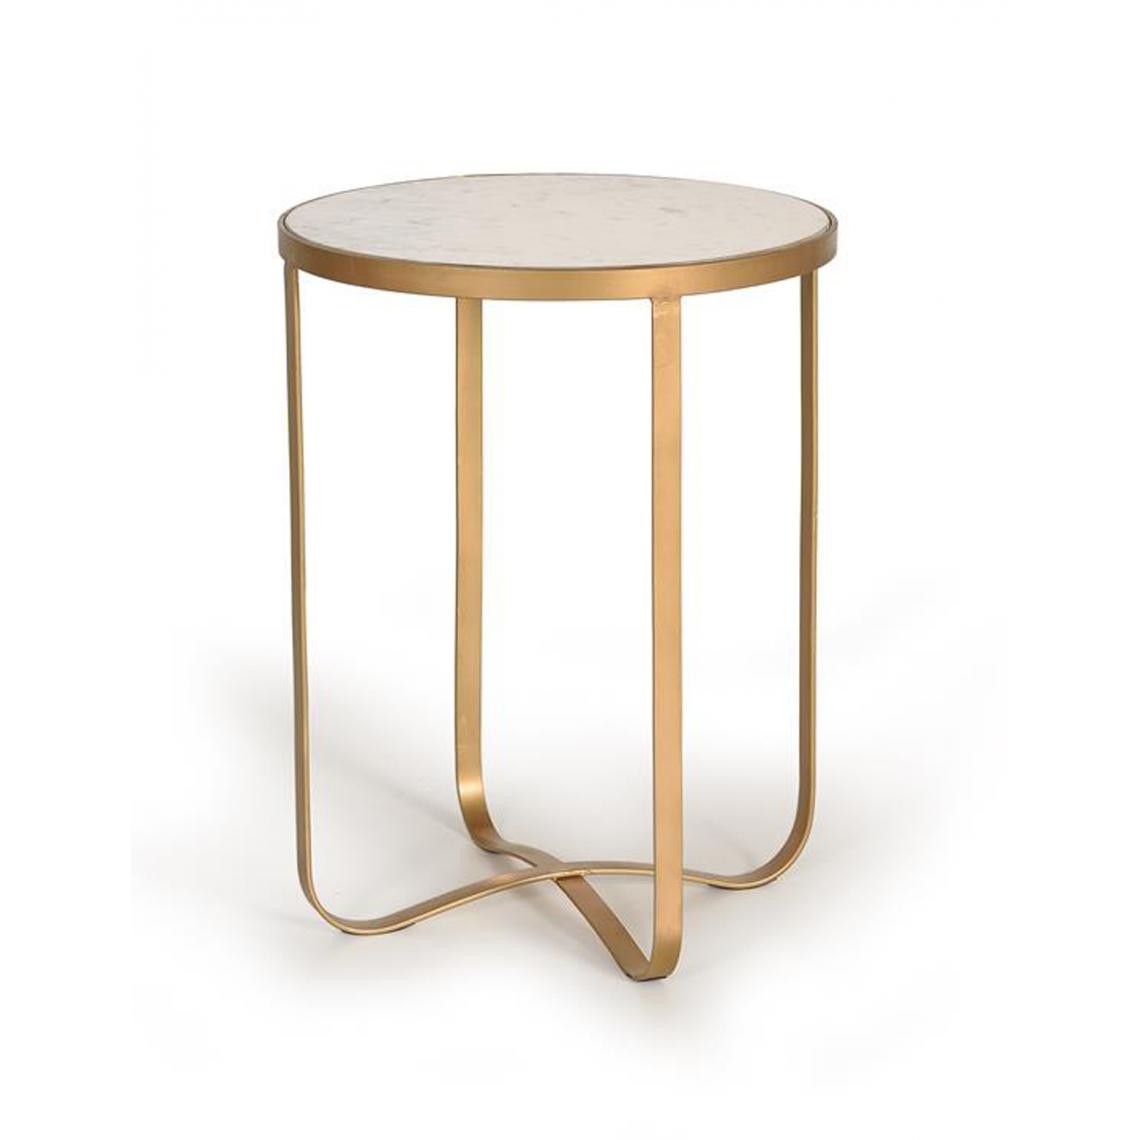 Pegane - Table basse en marbre et métal coloris blanc / doré - diamètre 45 x hauteur 60 cm - Tables basses